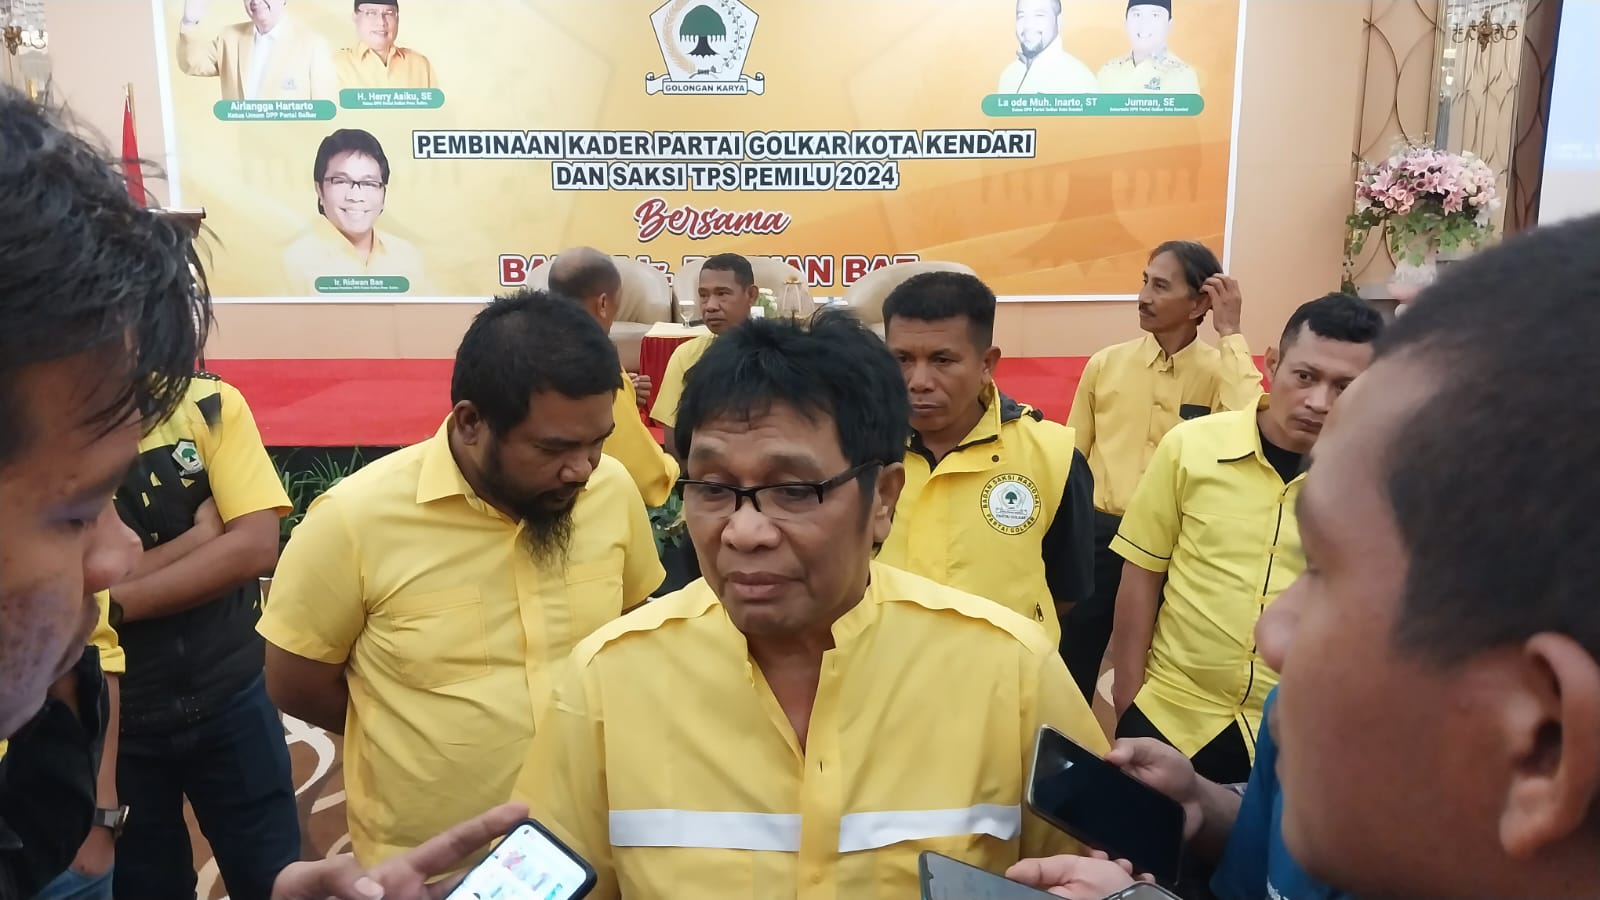 Jelang Pemilu 2024, Ridwan Bae Konsolidasikan Kader dan Saksi TPS Golkar Kota Kendari